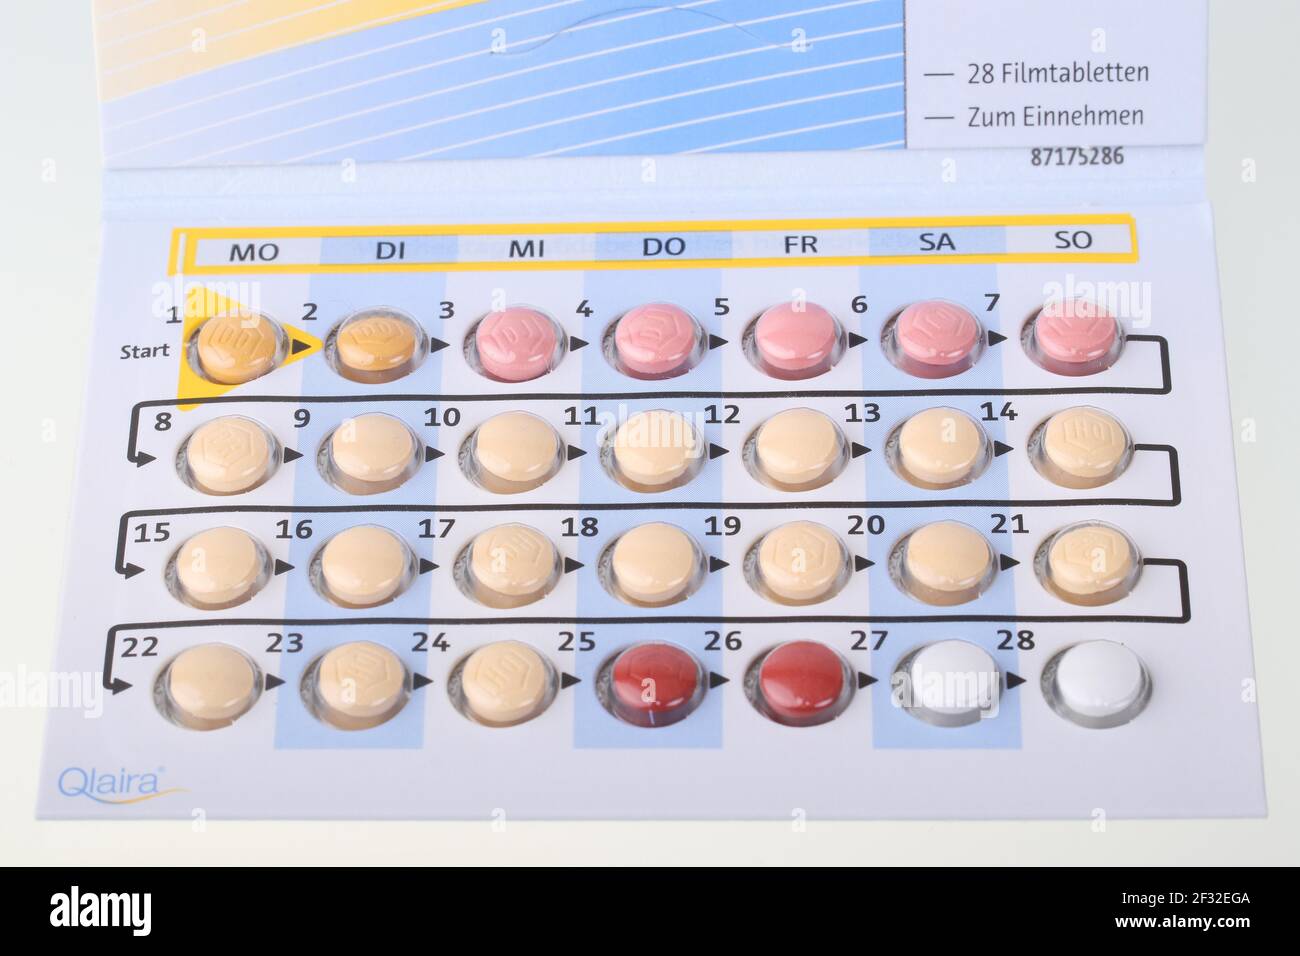 Pillola contraccettiva Qlaira della società Jenapharm, farmaco per contraccezione, confezioni di compresse, preparazione in 4 fasi, confezione mensile Foto Stock